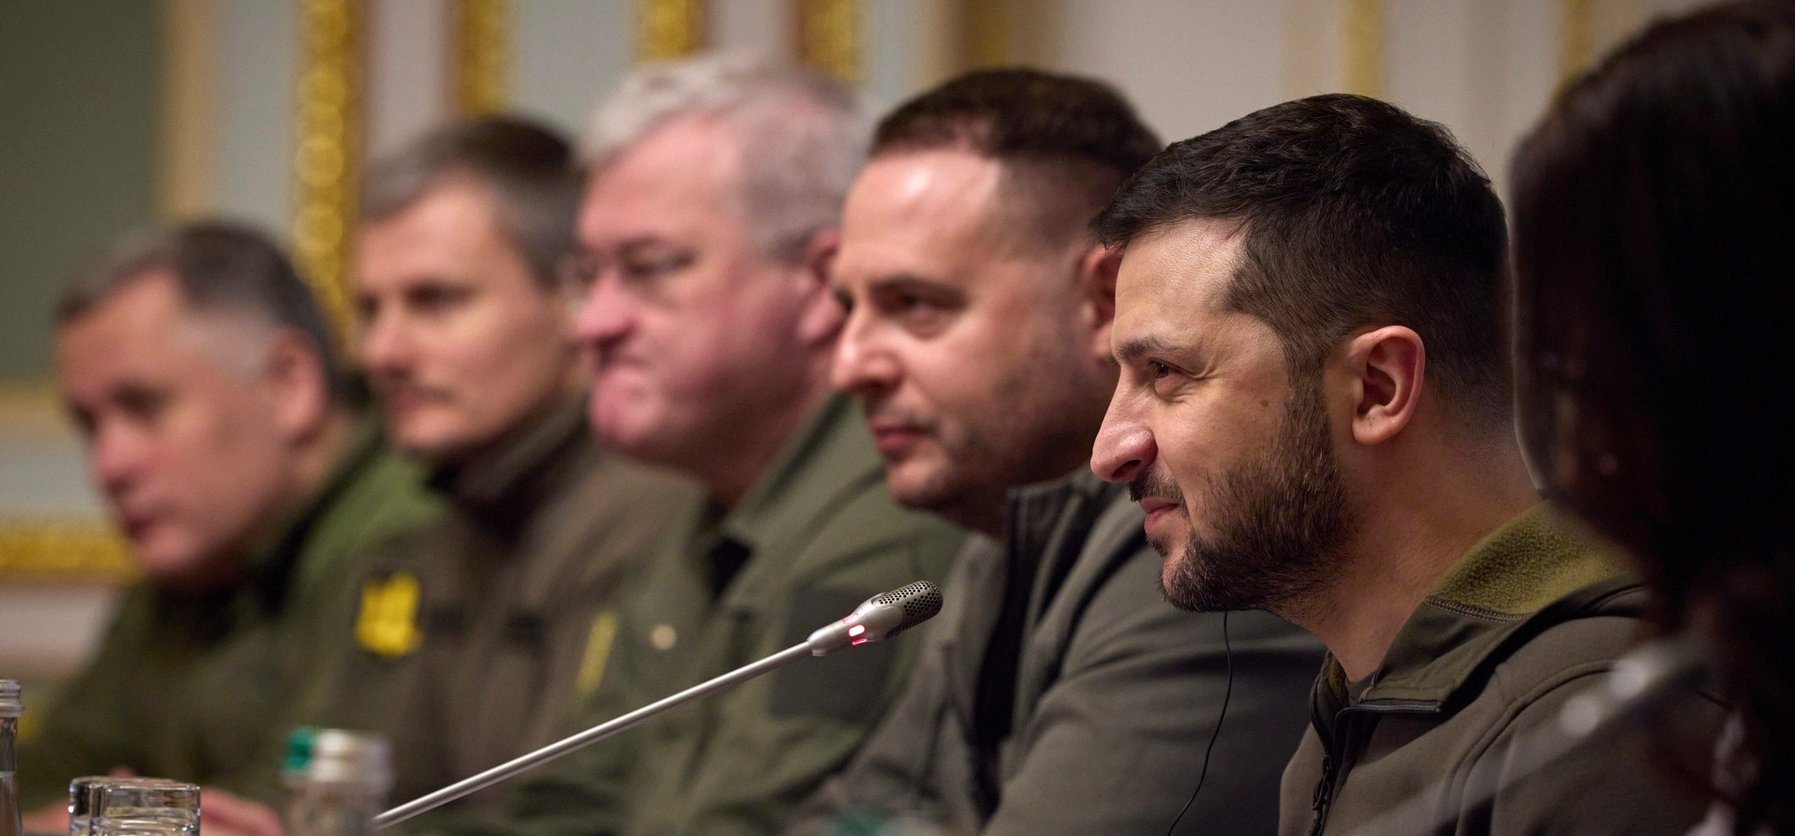 Tavaszra véget érhet a háború? Elszólta magát az ukrán védelmi miniszter egyik helyettese